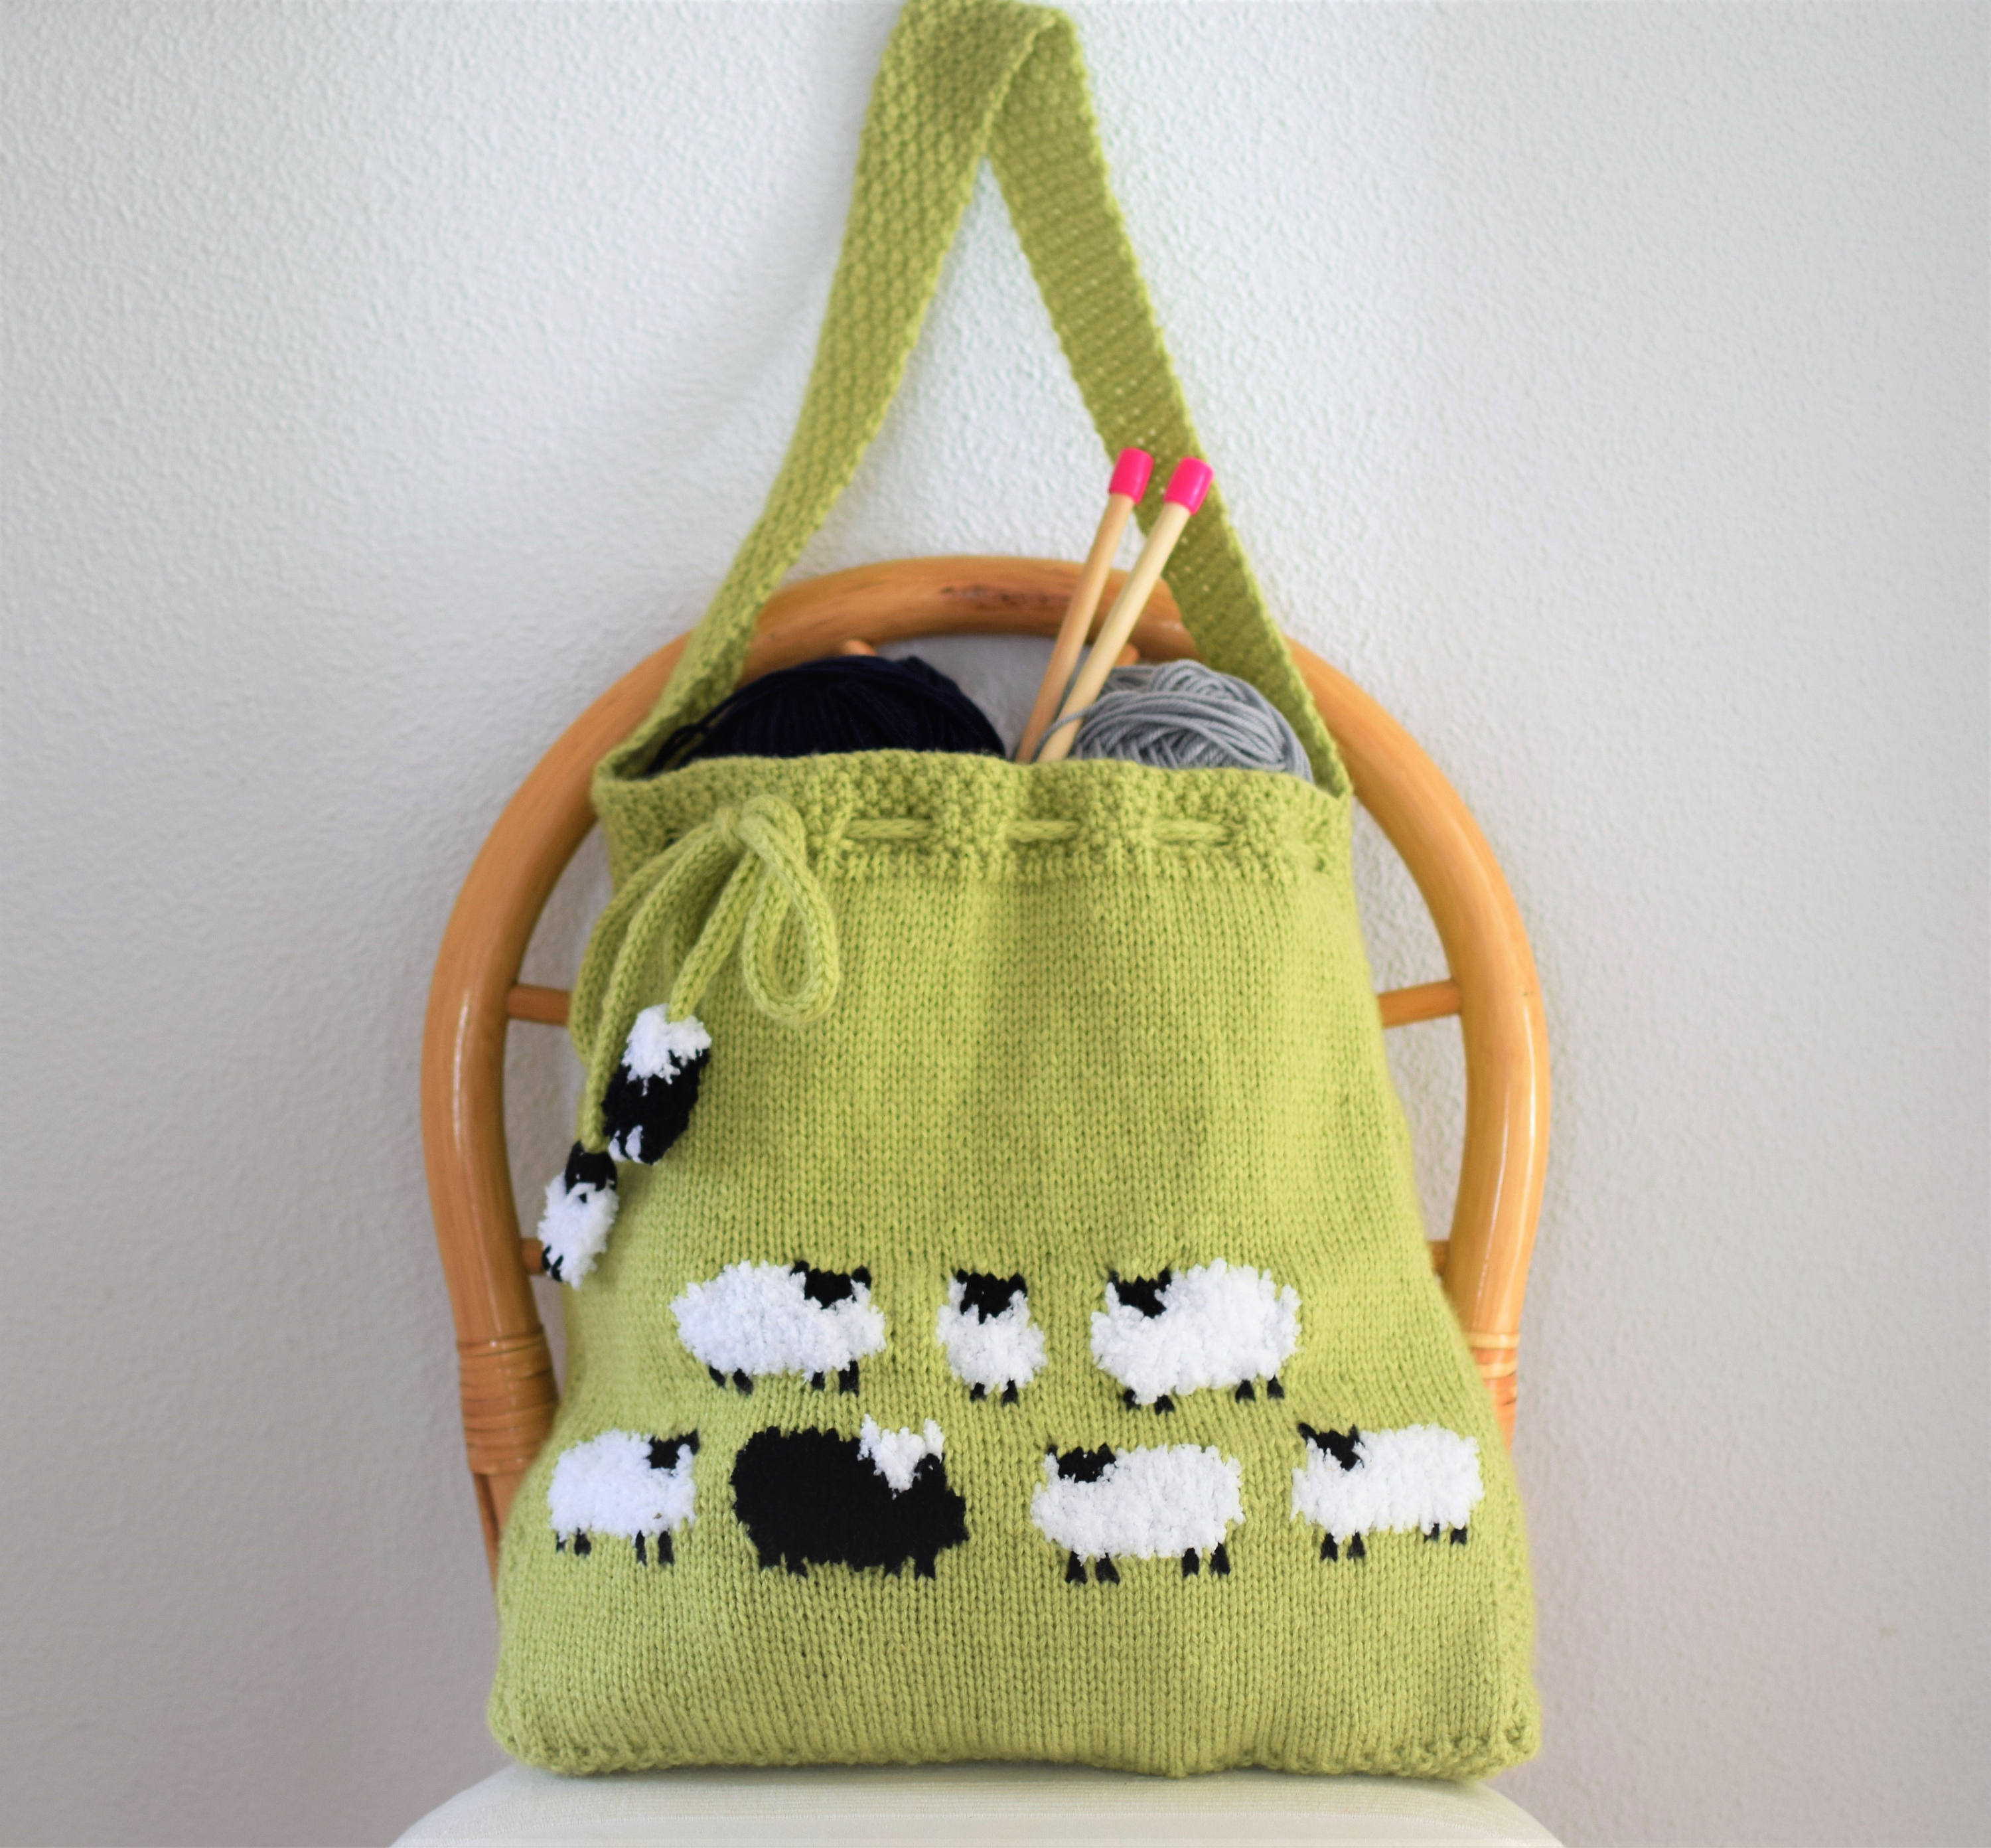 Knitted Bag Pattern Bag Knitting Pattern Knitting Bag Pattern Handmade Tote Bag Sheep